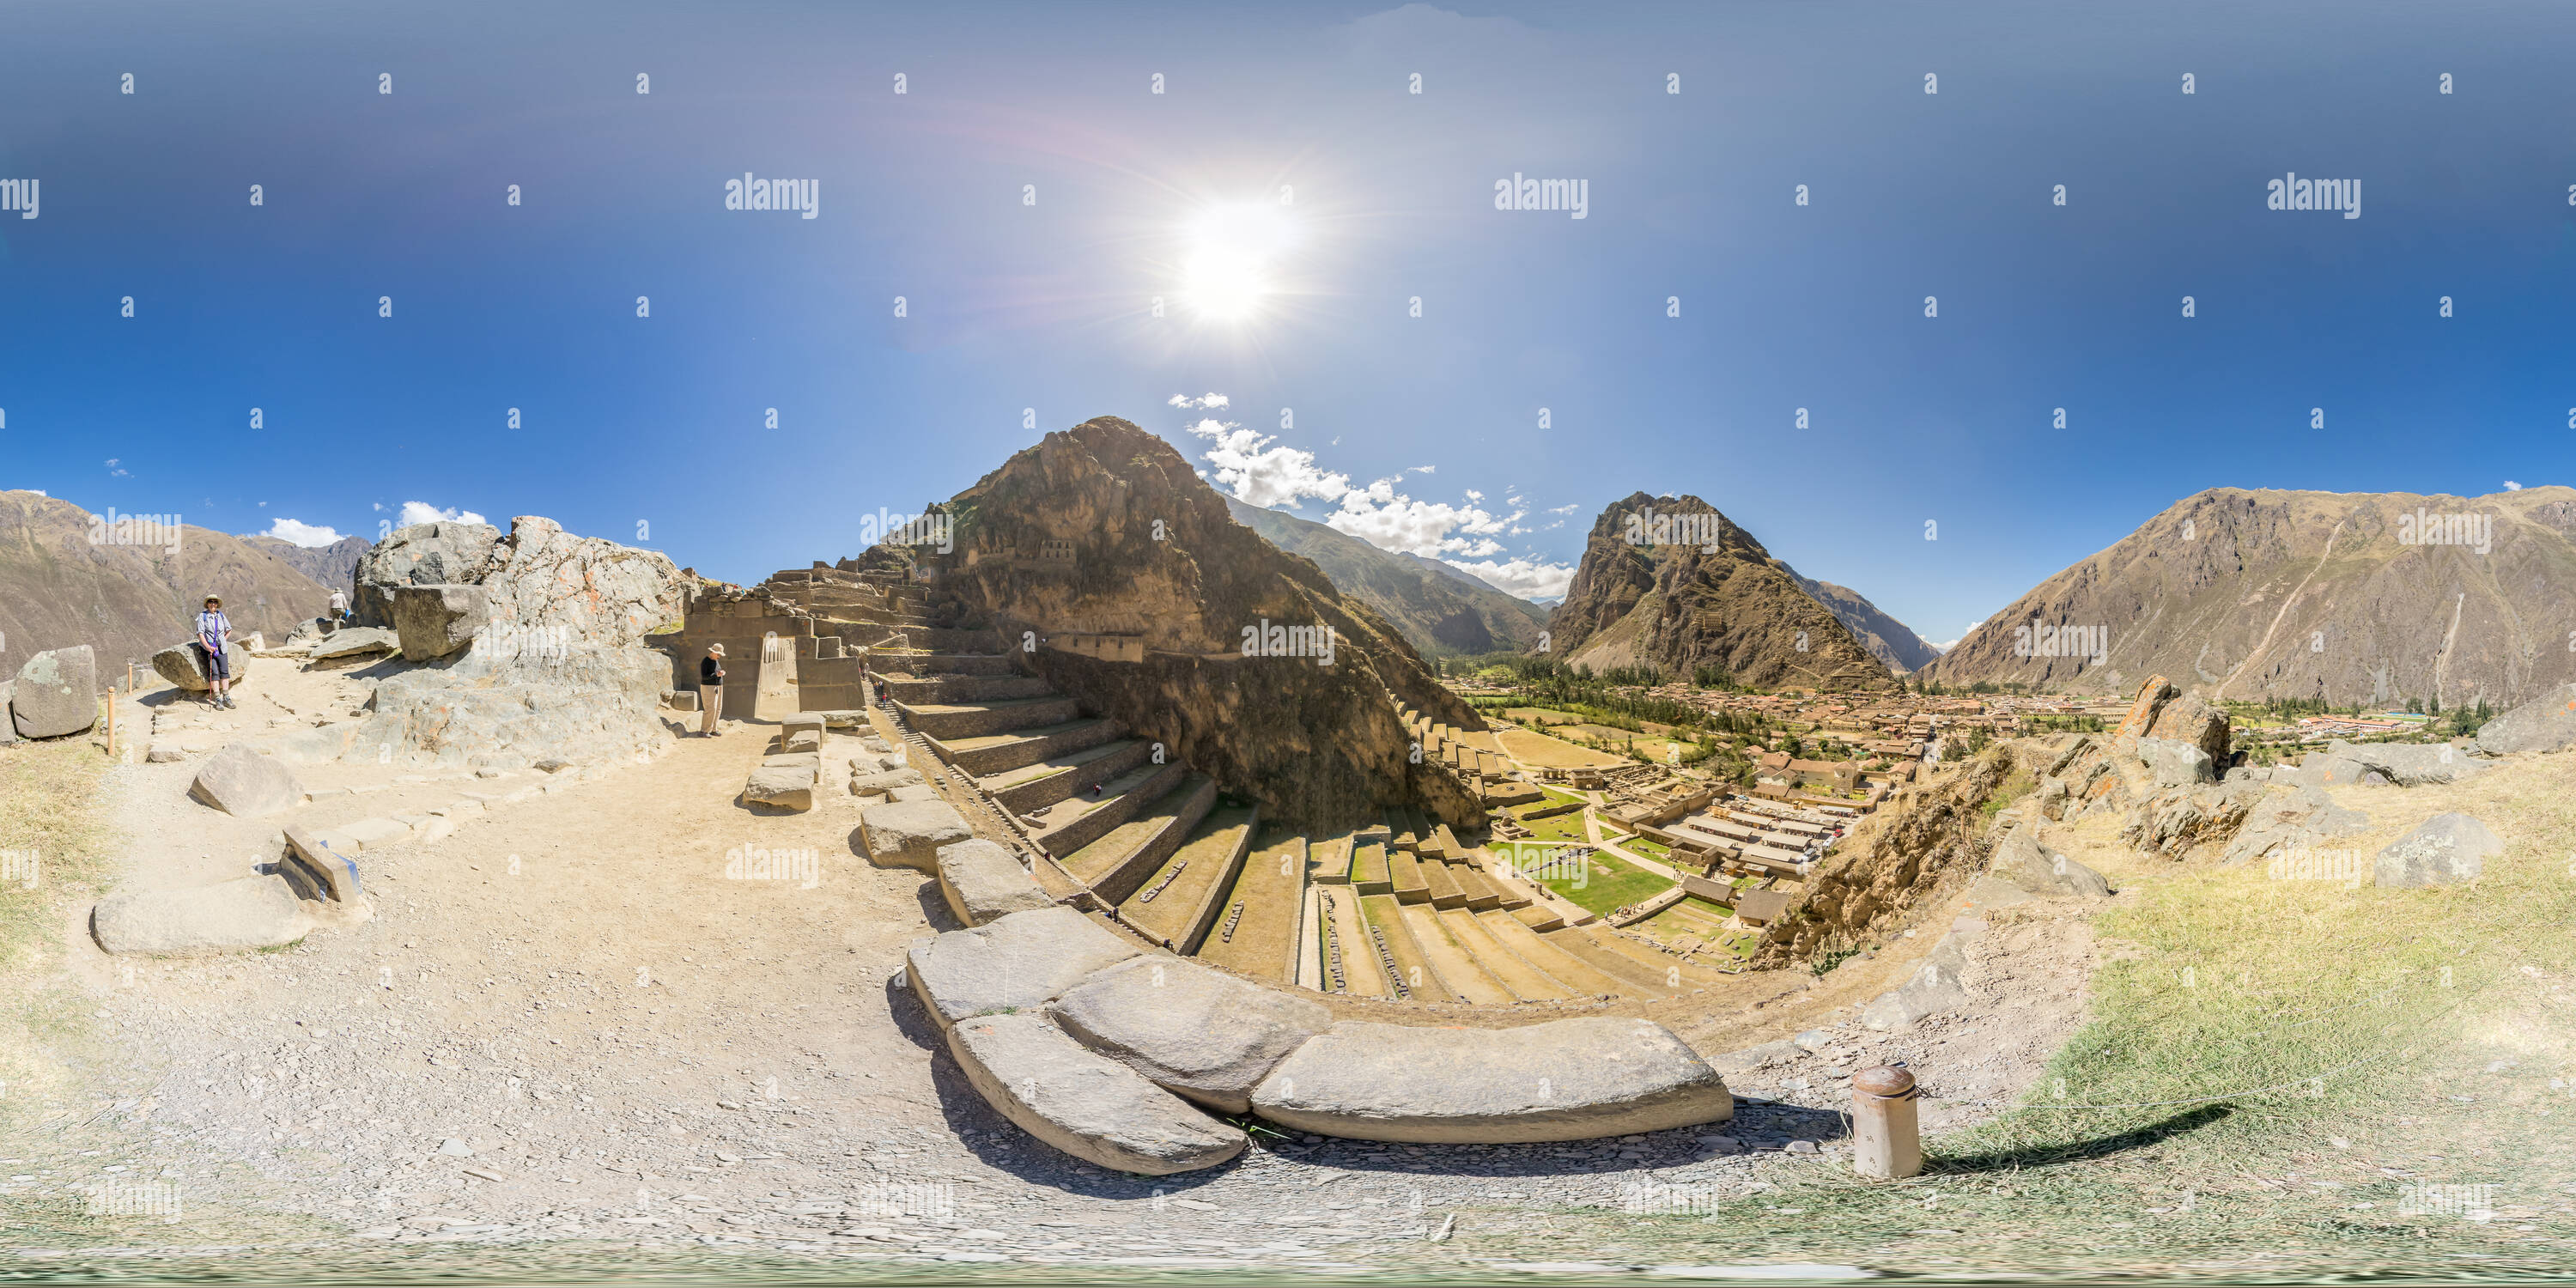 360 degree panoramic view of Inca Site, Ollantaytambo, Urubamba, Cusco Region, Peru